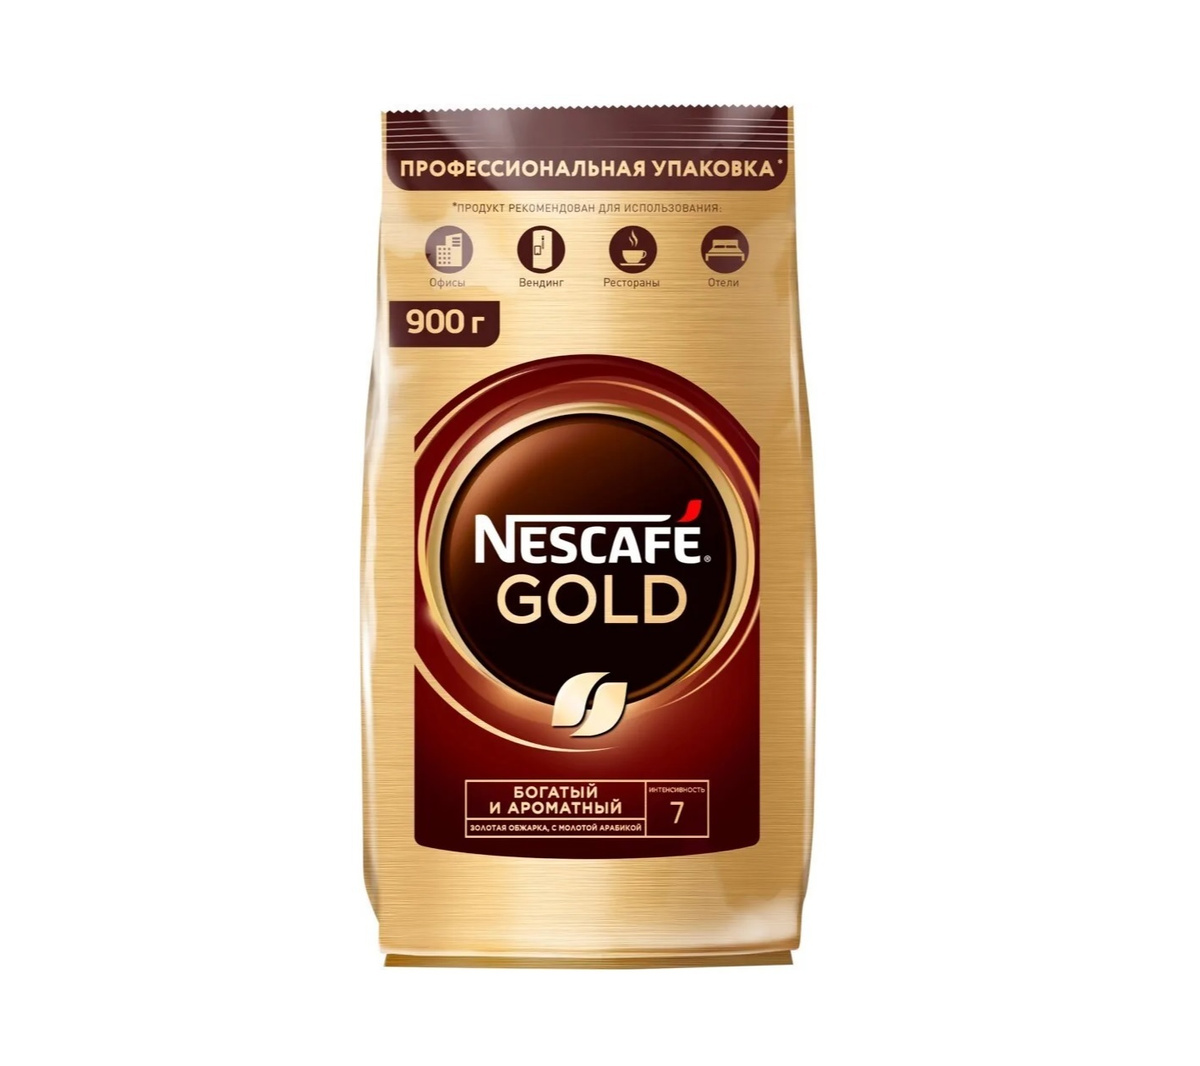 Кофе нескафе спб. Nescafe кофе Gold 900г.. Кофе молотый Нескафе Голд. Кофе Нескафе Голд пакет 320г. Кофе растворимый Нескафе Голд 320г м/у.